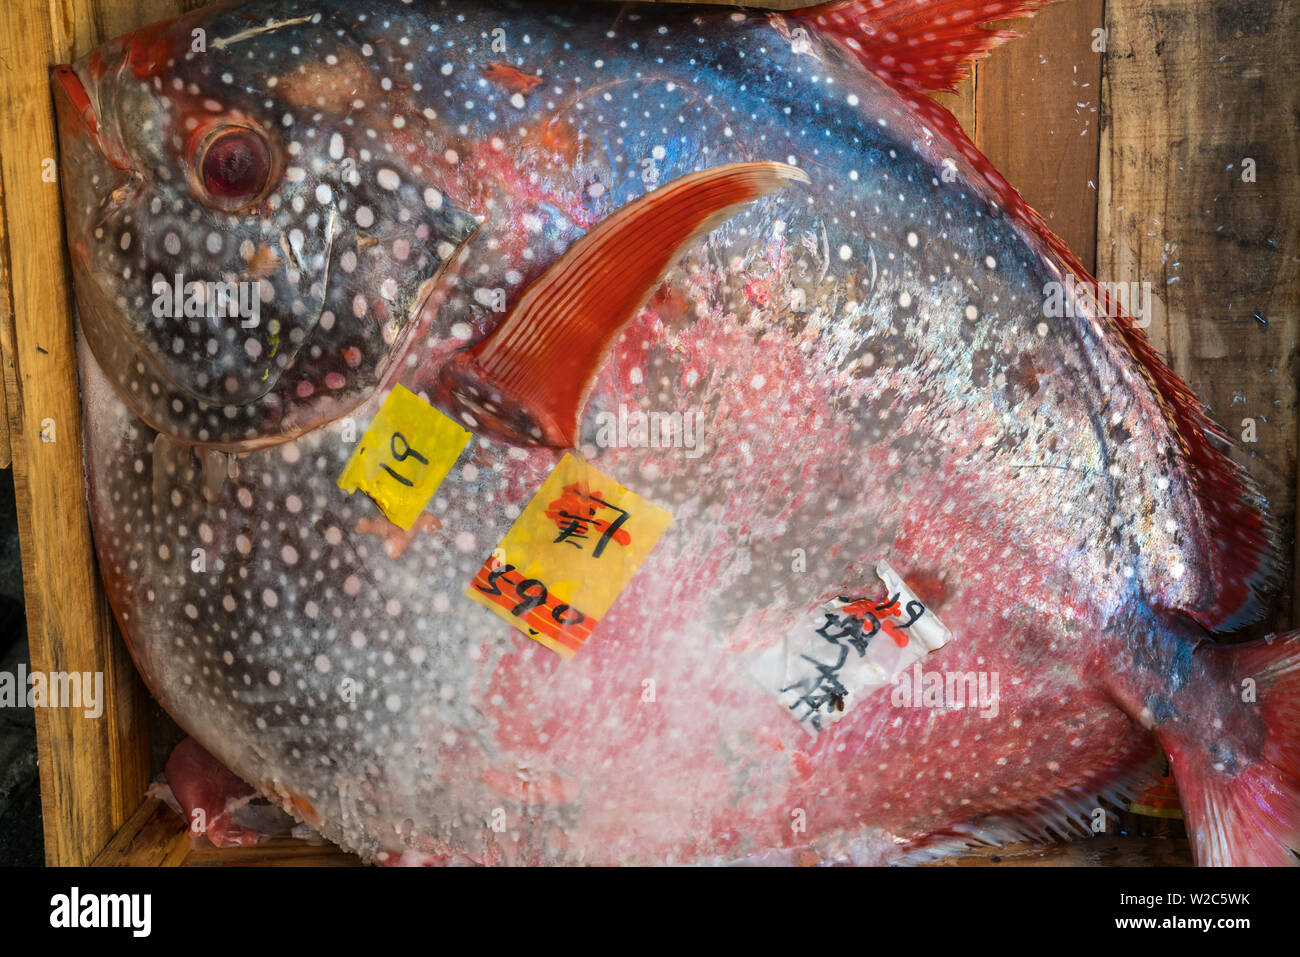 Opah poisson, Marché Central des poissons de Tsukiji, Tokyo, Japon Banque D'Images